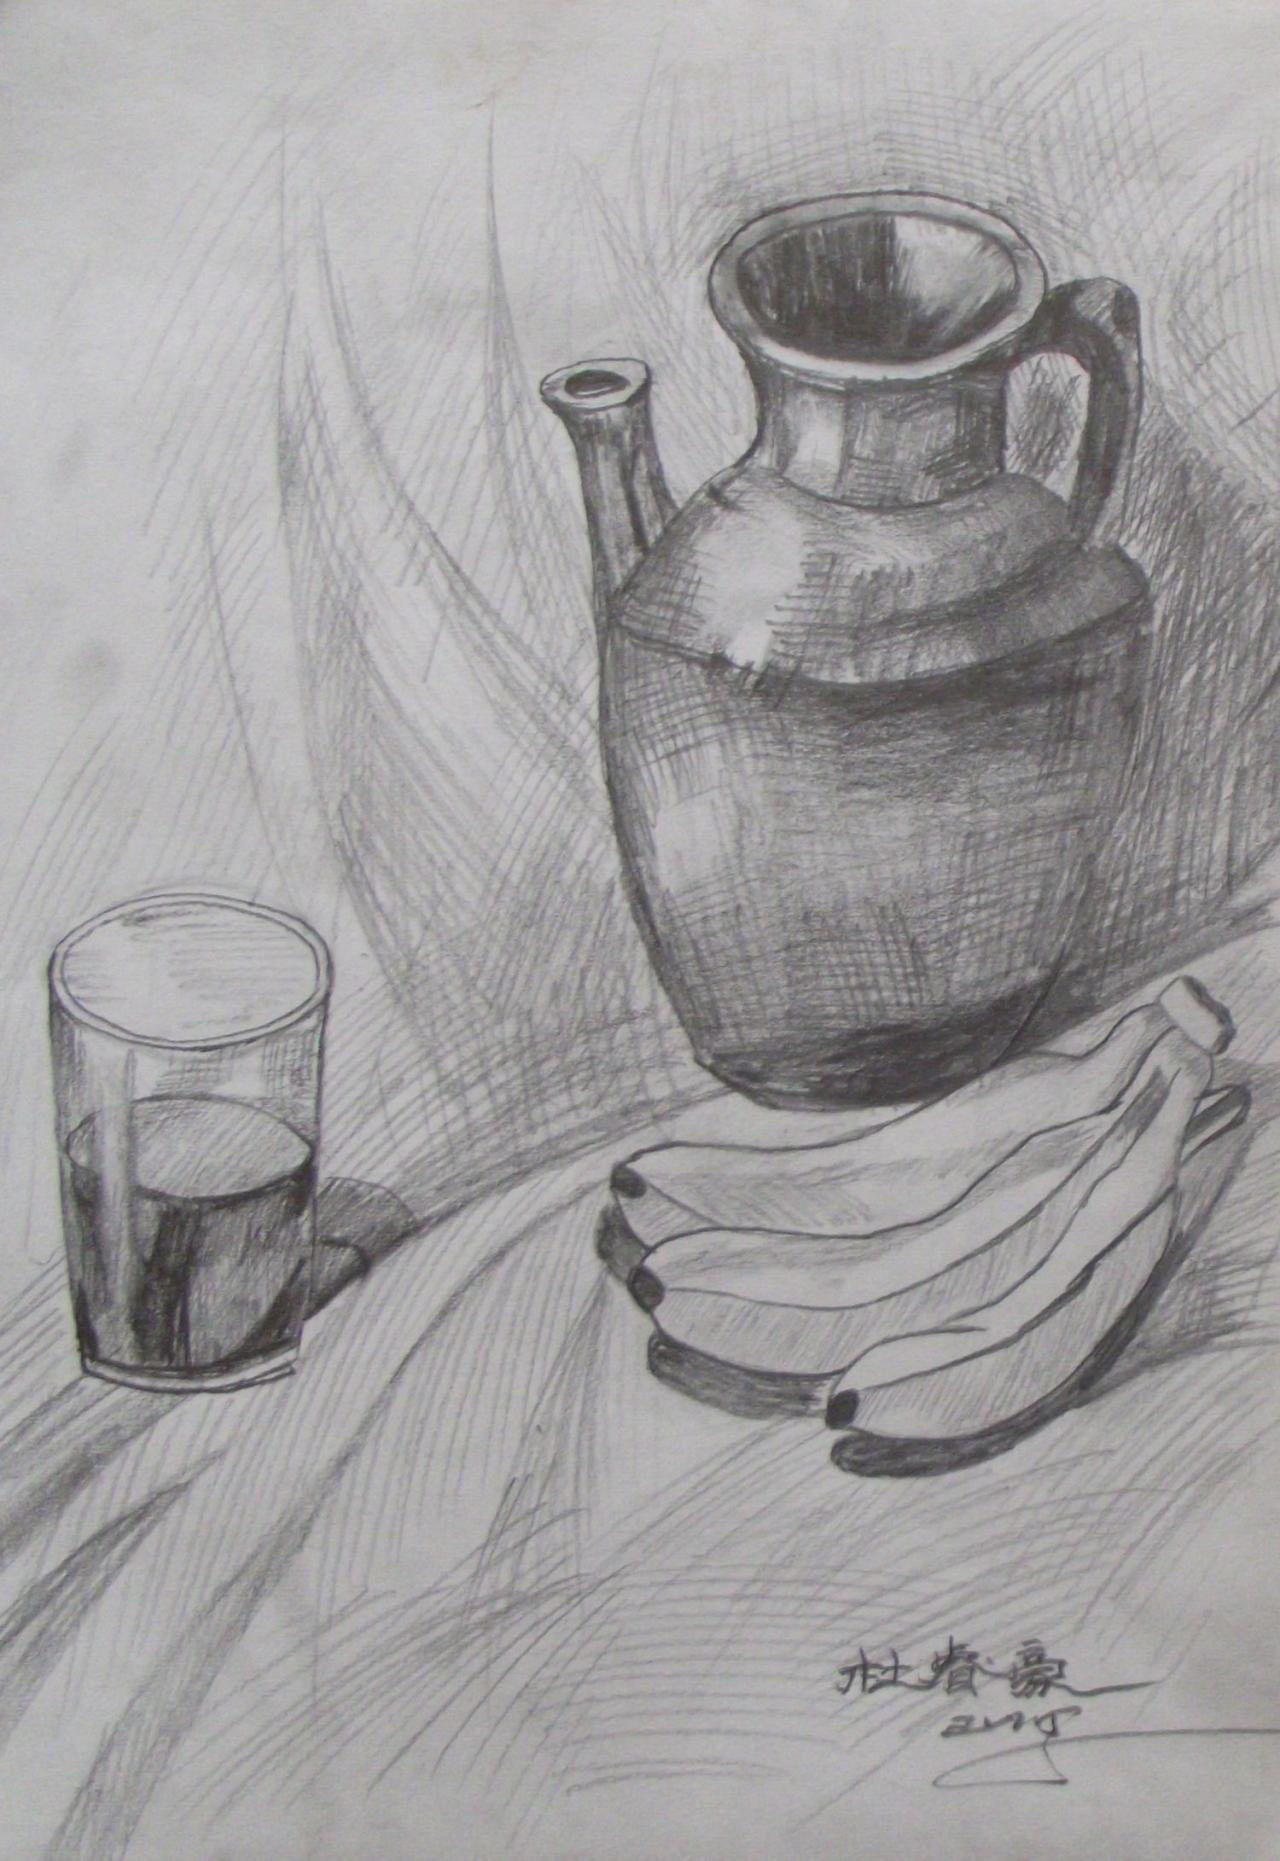 陶罐、香蕉、玻璃杯 静物素描 杜睿豪画